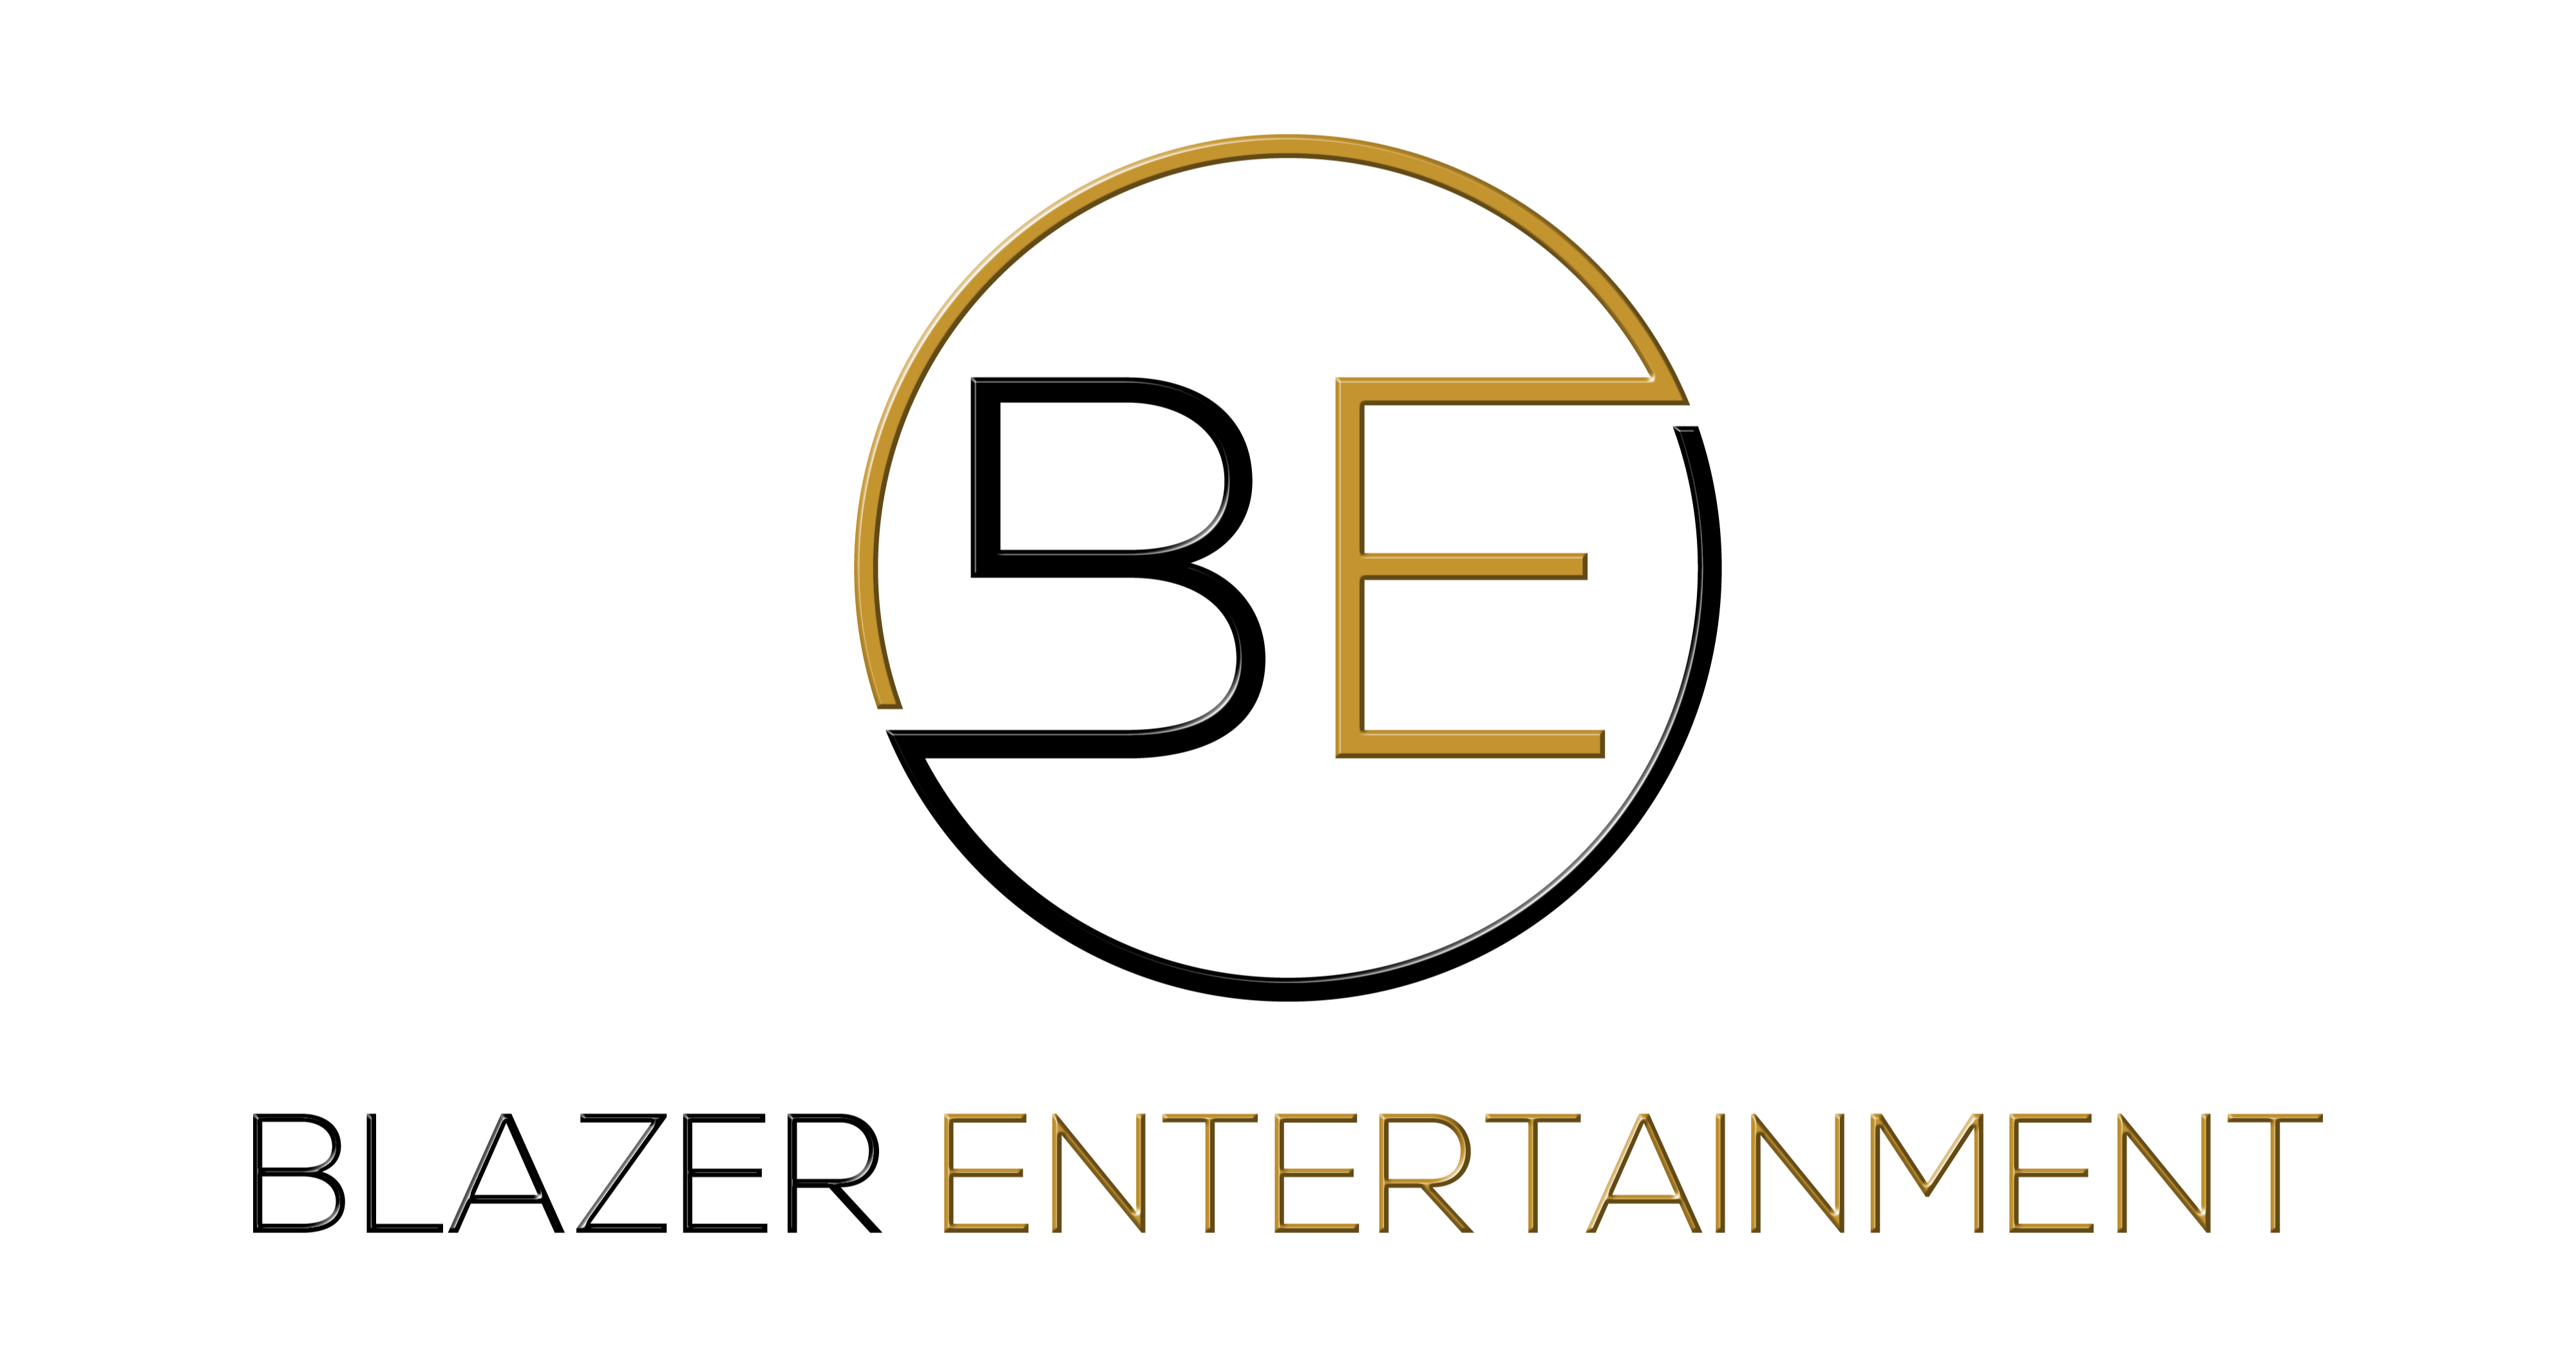 Blazer Entertainment